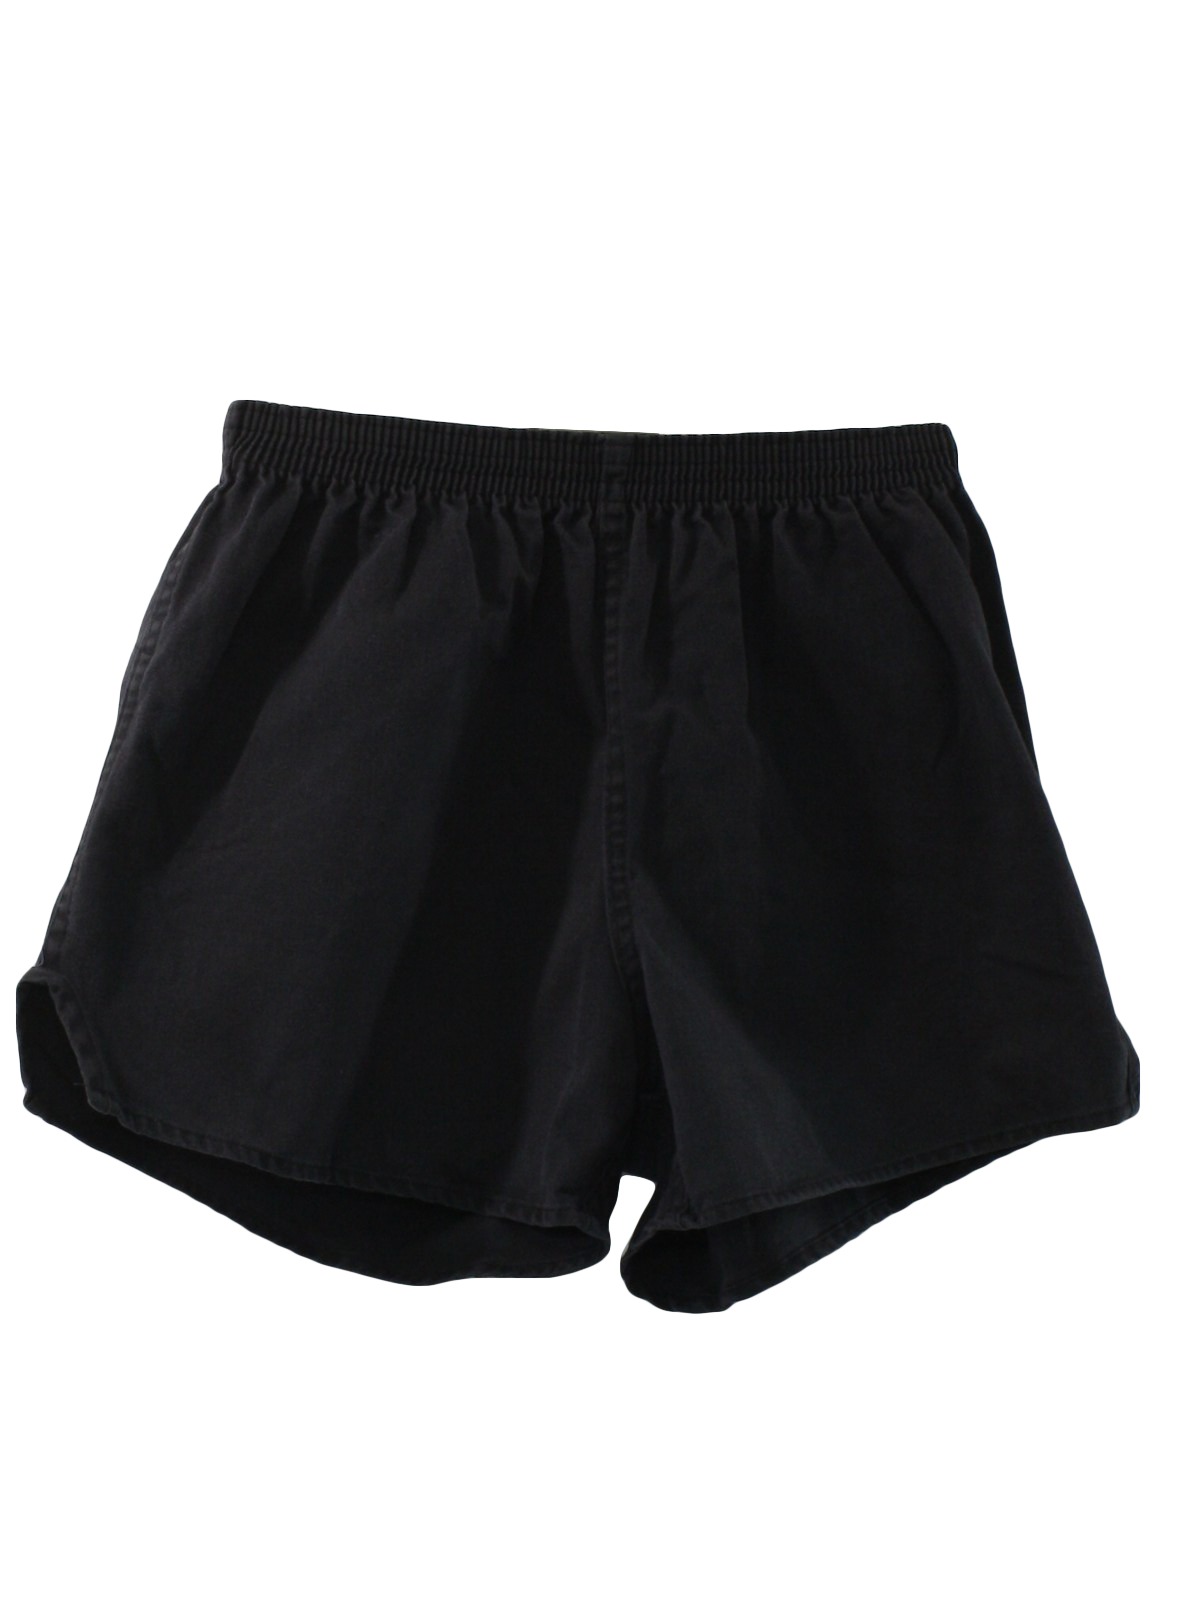 80's Vintage Shorts: 80s -Soffe Shorts- Unisex black background ...